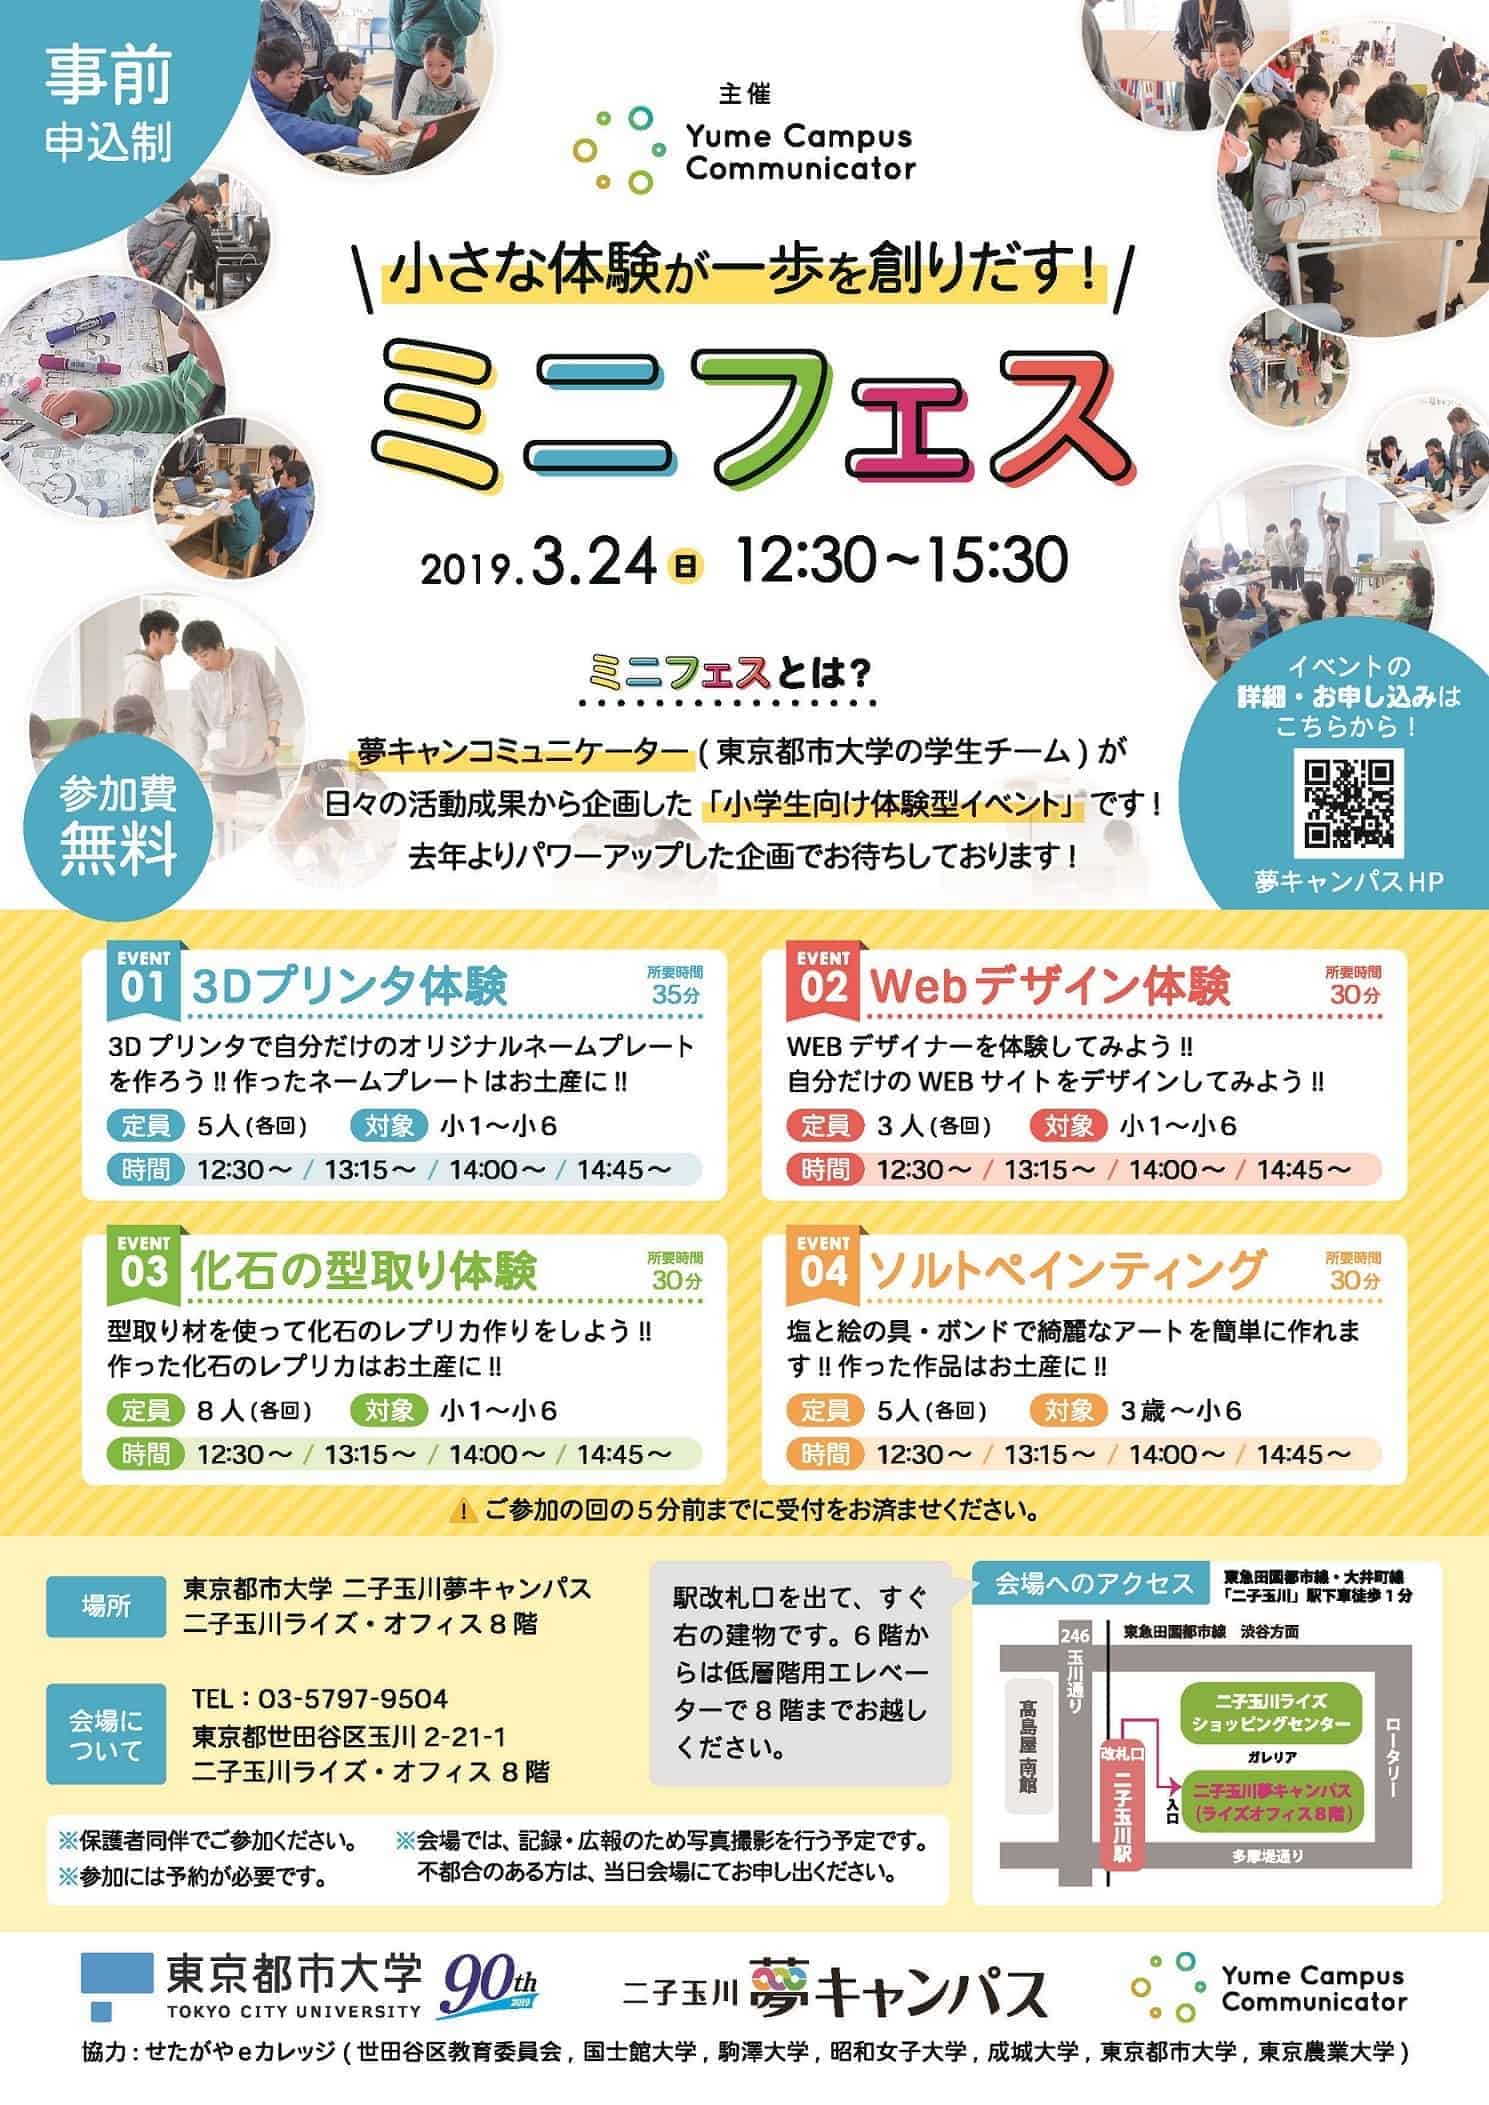 3 24 日 小学生向け体験型イベント 東京都市大学 二子玉川夢キャンパスで Futakoloco